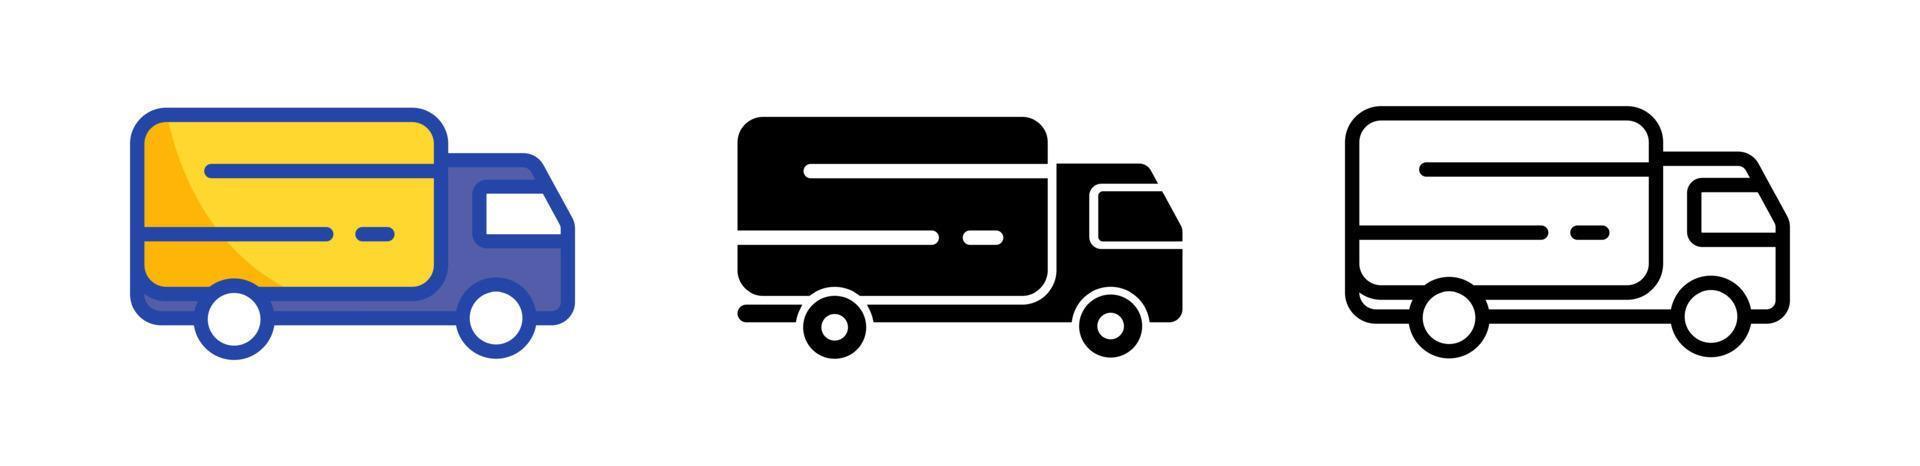 icono de camión para aplicaciones de transporte, comercio y sitios web en diferentes estilos de diseño. conjunto de iconos de entrega. vector